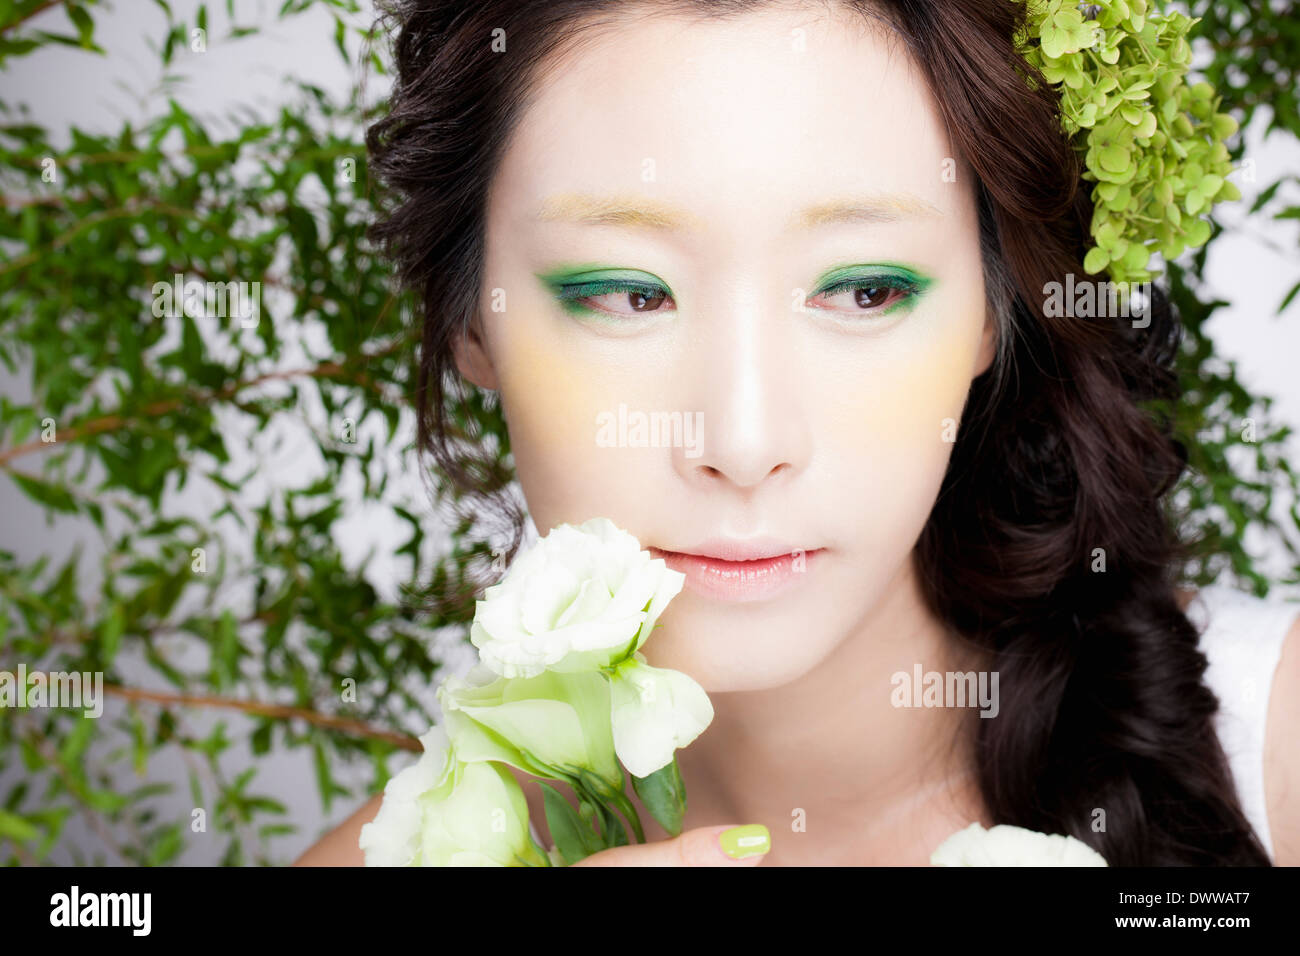 Una donna con occhio verde compongono Foto Stock